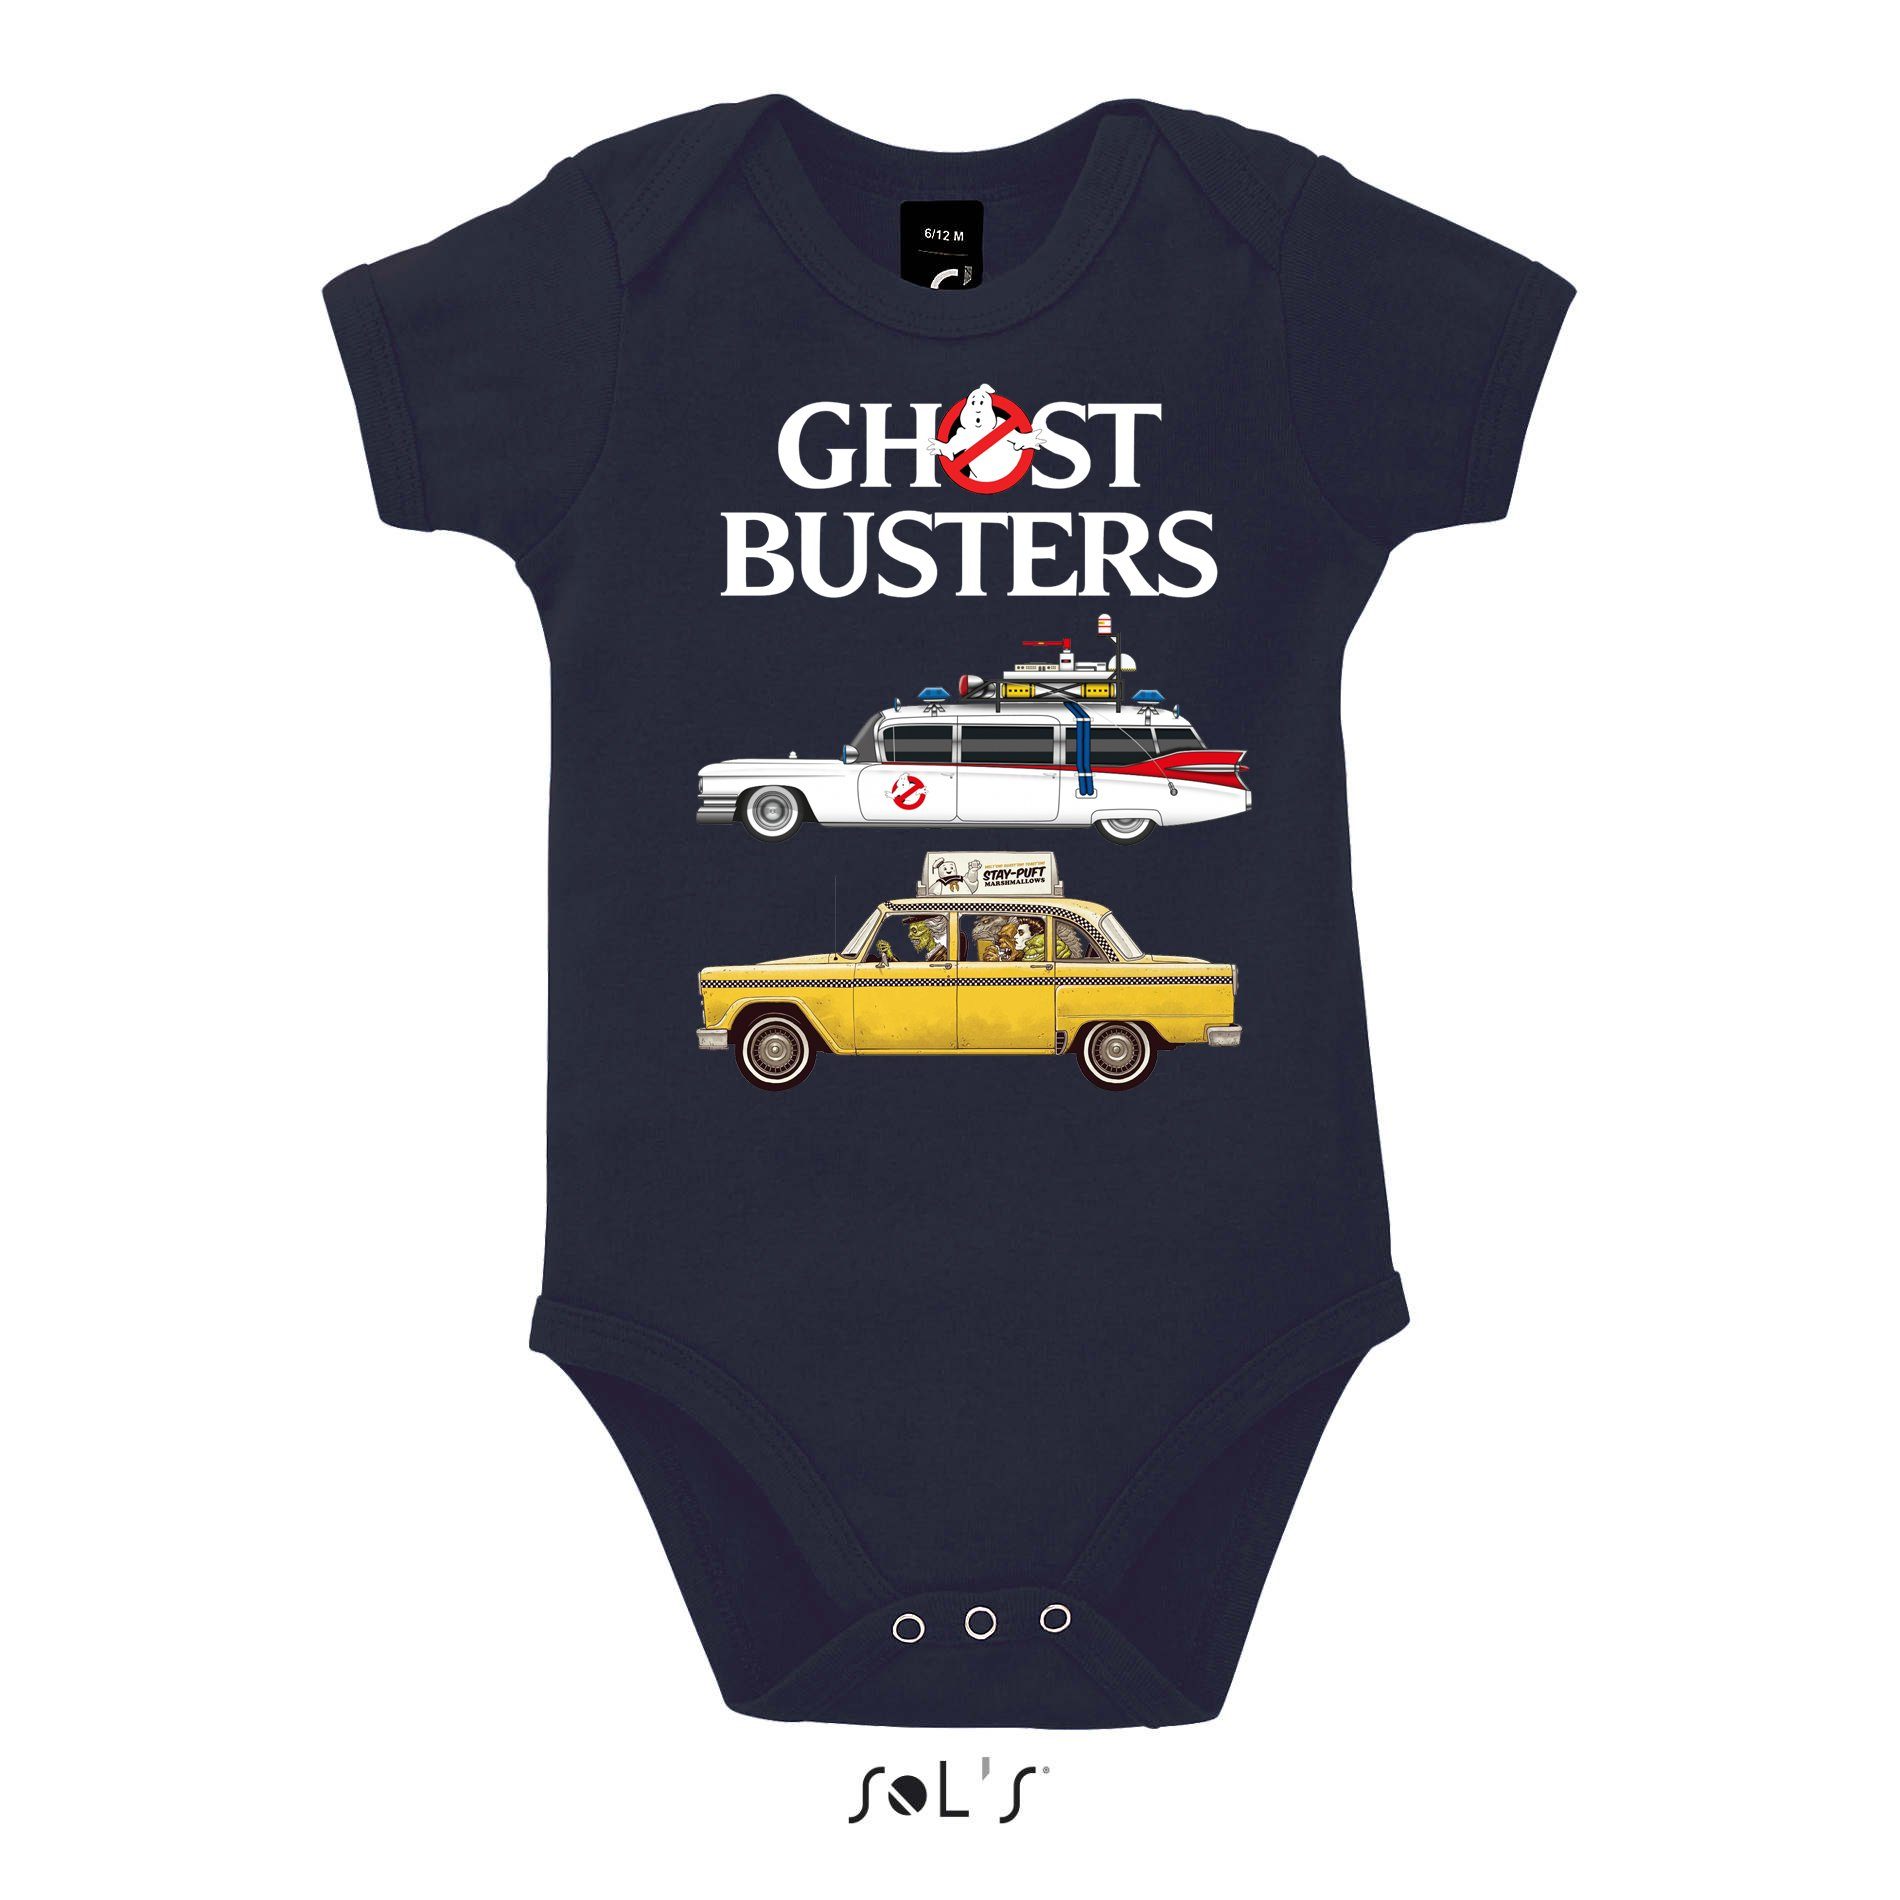 Blondie & Film Kinder Cars Baby Geisterjäger Ghost Ghostbusters Auto Strampler Geister Navyblau Brownie